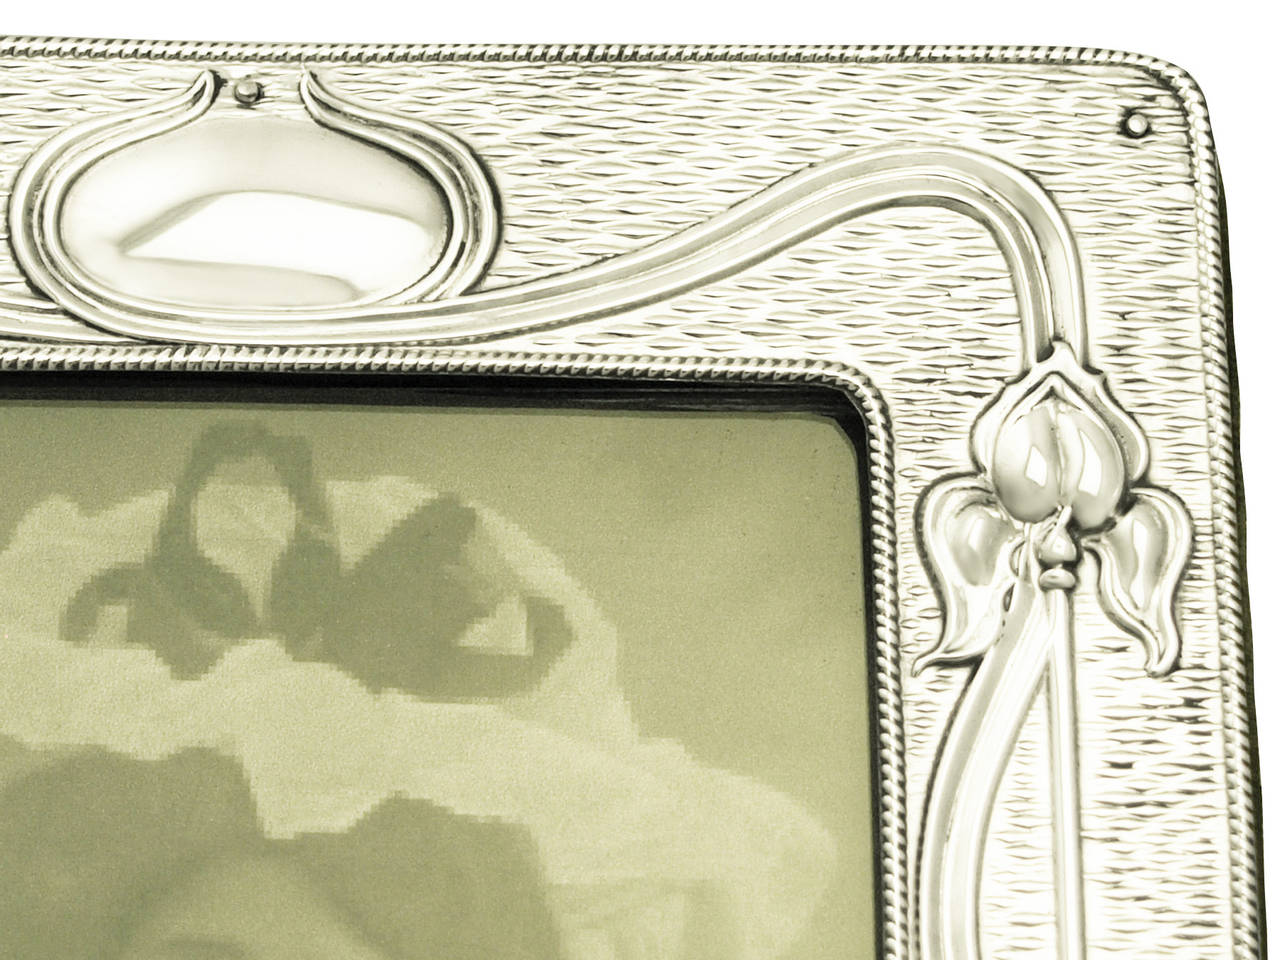 Antique Edwardian Sterling Silver Photograph Frame, Art Nouveau Style 2